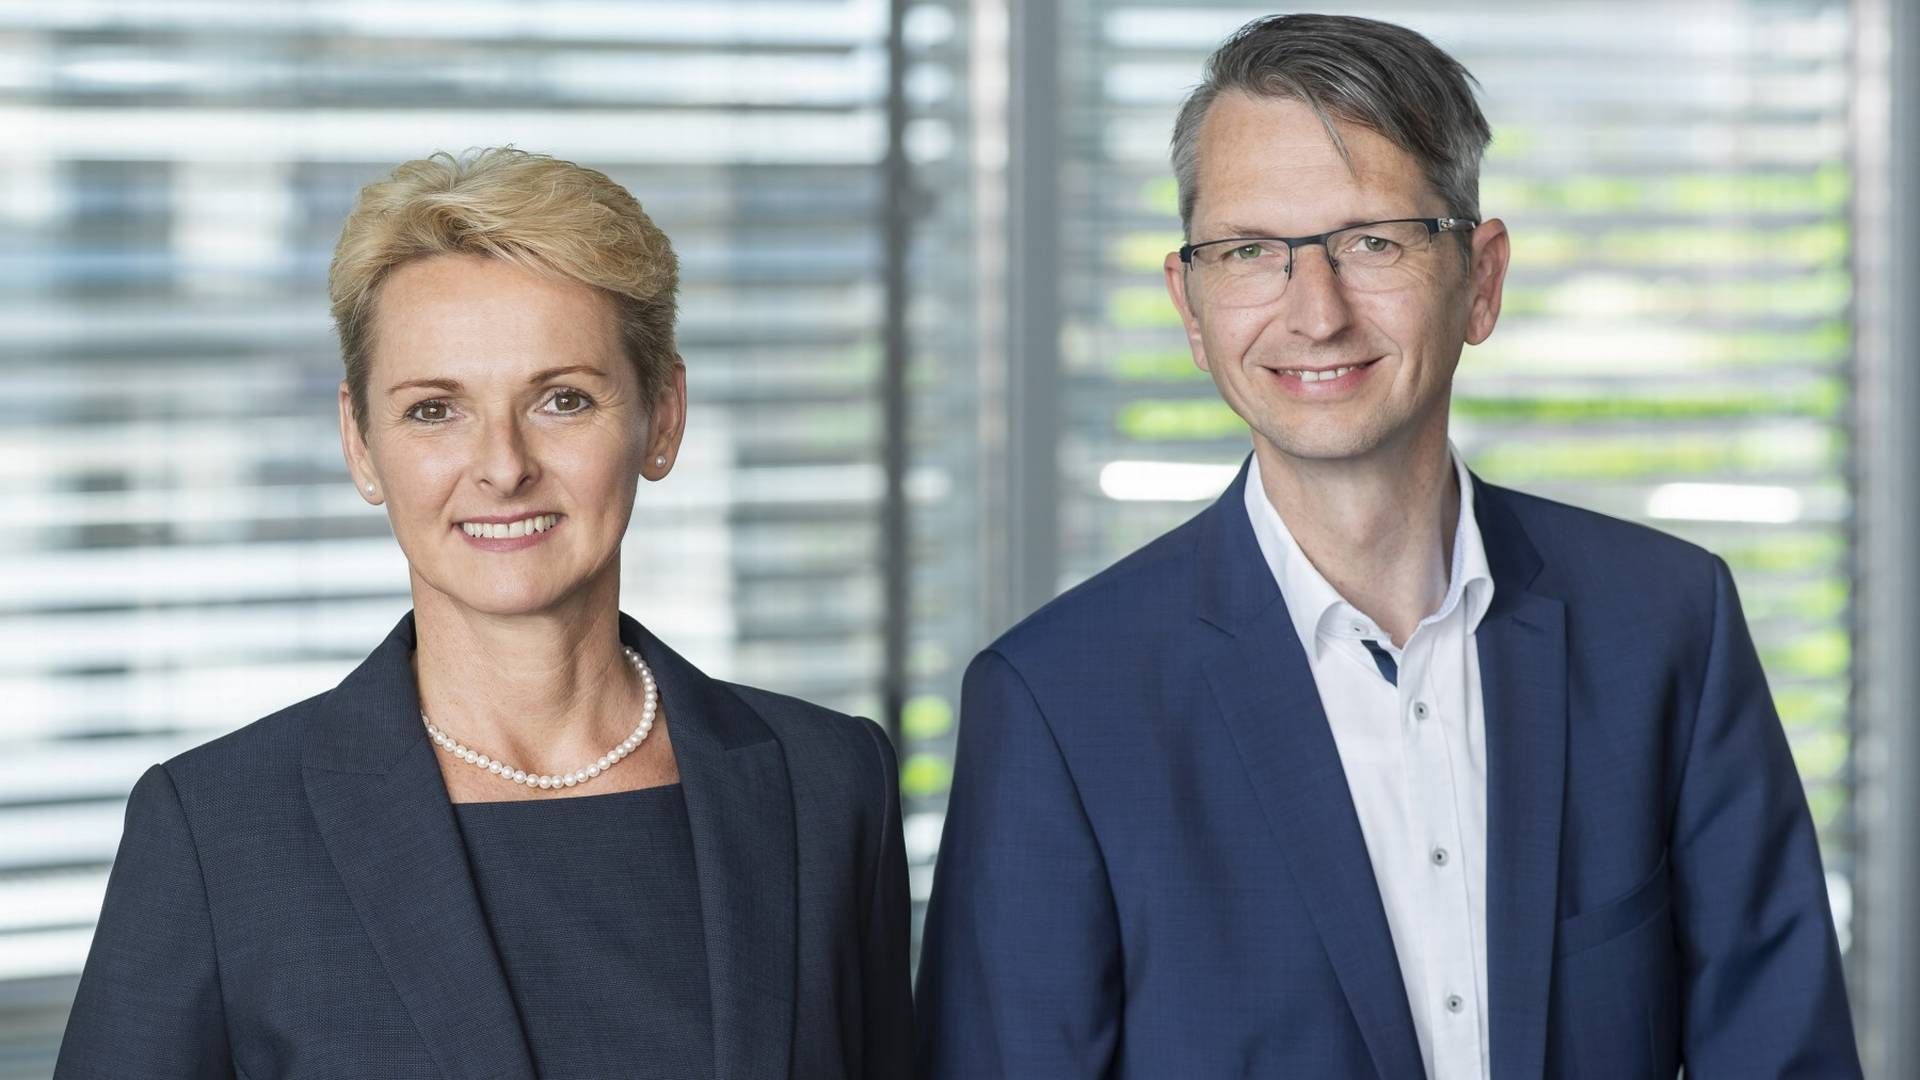 Sabine Meister und Martin Schuhmacher, das neue Vorstandsteam der Volksbank Konstanz. | Foto: Volksbank Konstanz/© Ulrike Sommer